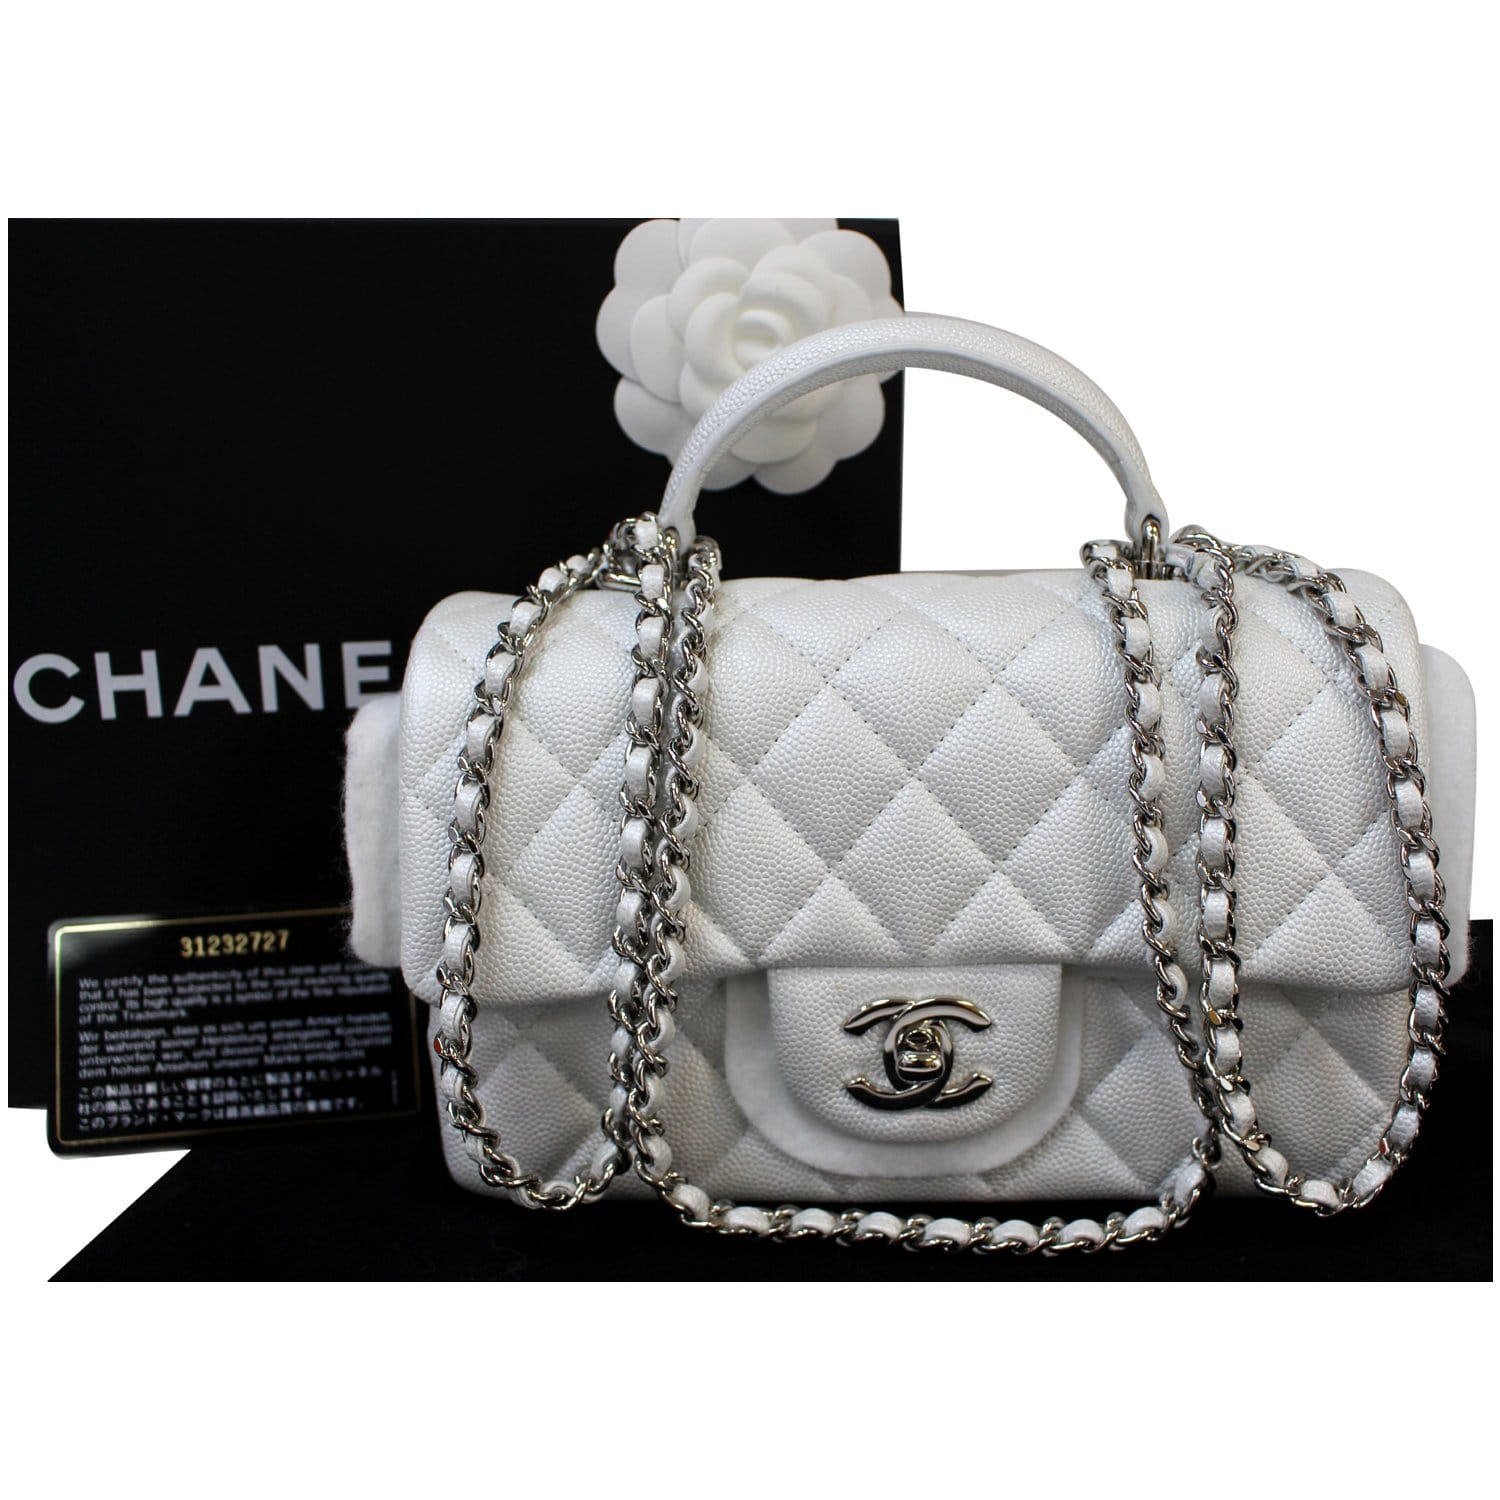 chanel handbag with handle